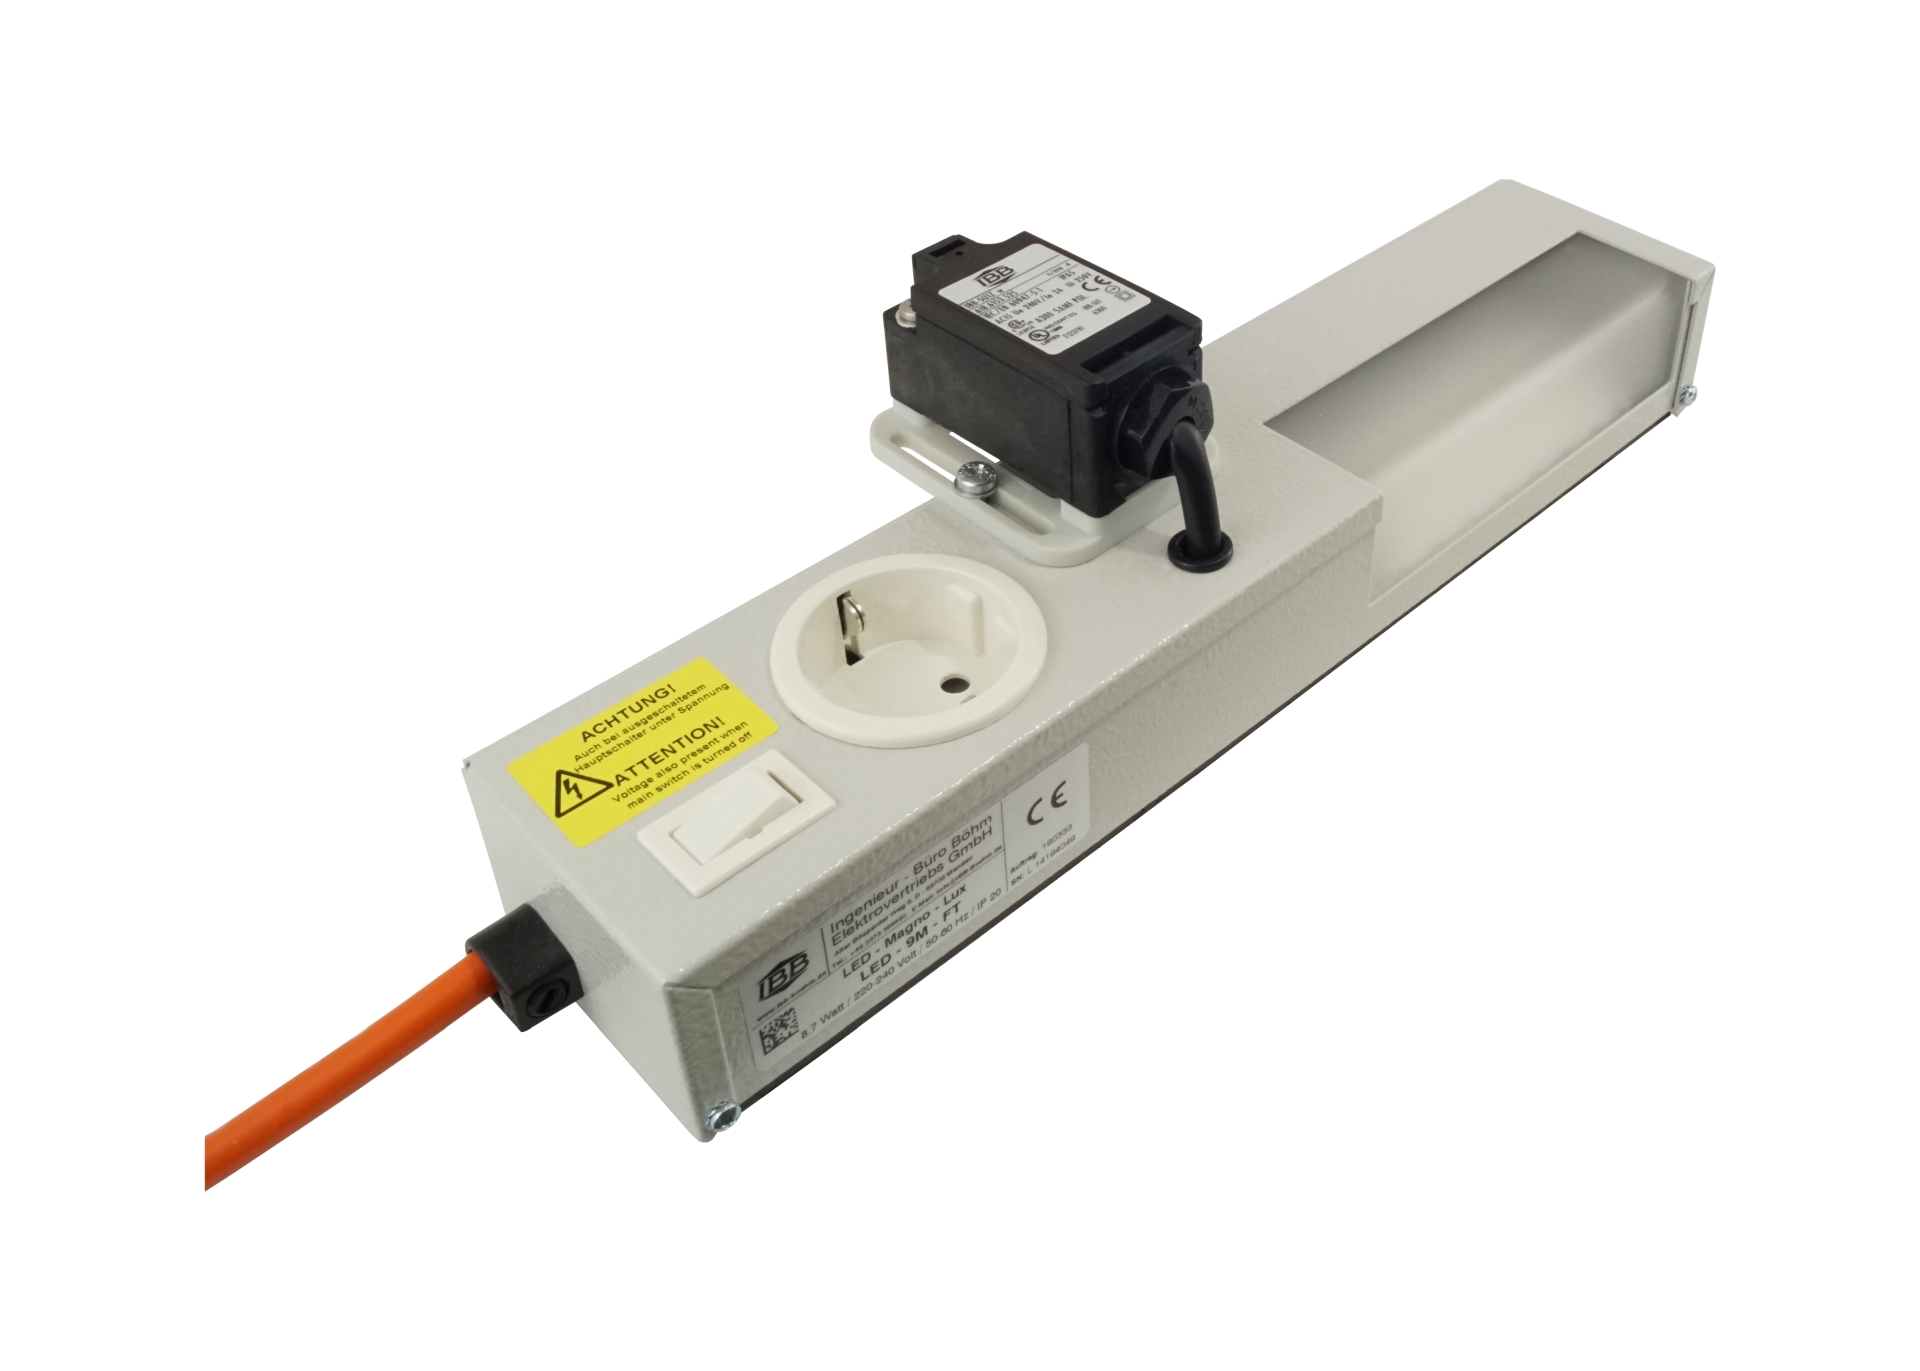 Abbildung LED Schaltschrankleuchte LED-Magneto-Lux 8 Watt, 110-240 Volt/50-60 Hz | Magnetbefestigung, ab 400mm Schrankbreite